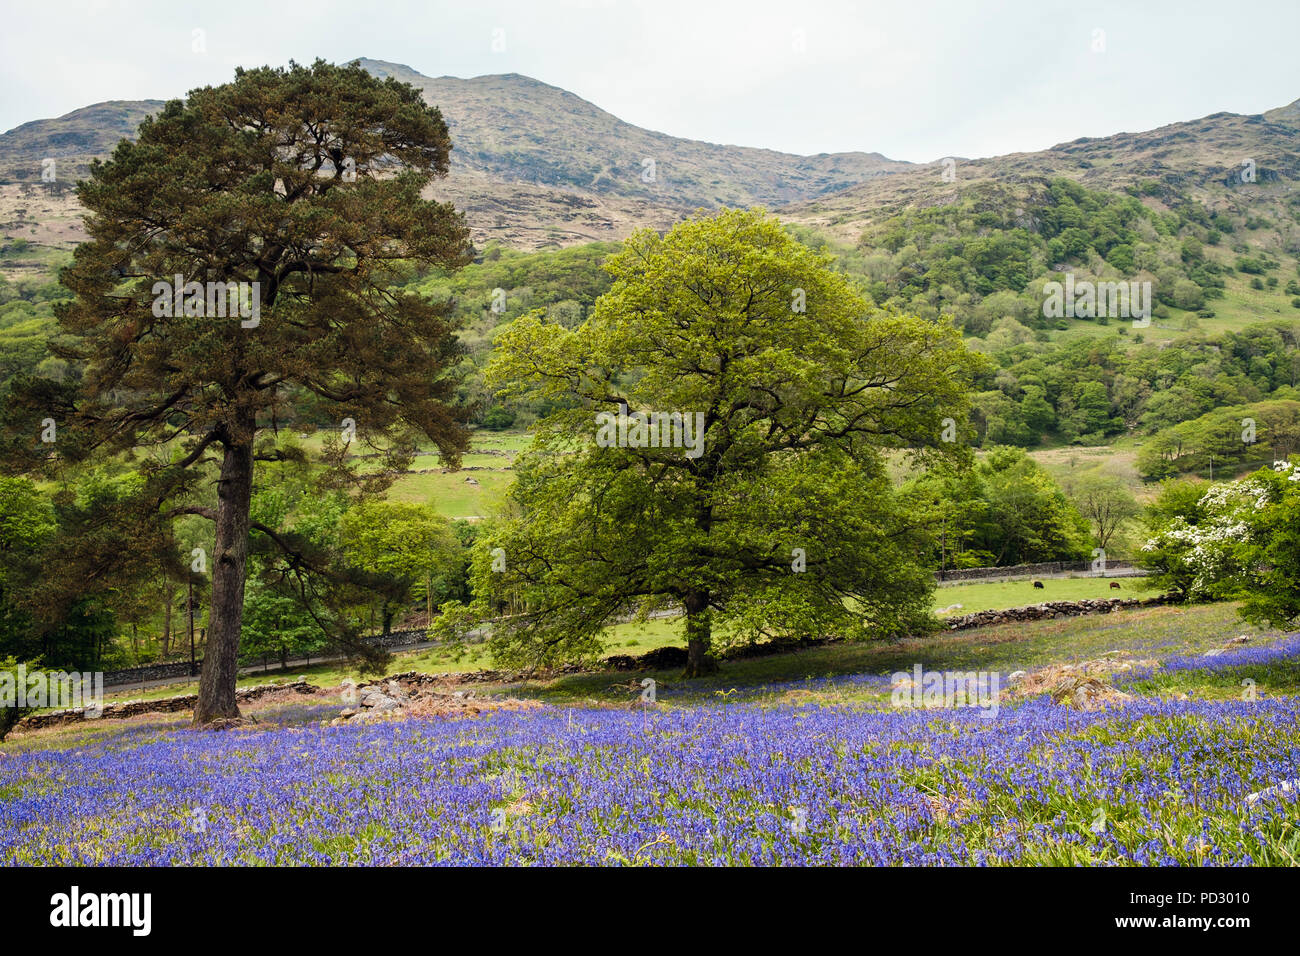 De plus en plus d'un natif jacinthes paysage de colline ouverte dans le parc national de Snowdonia en campagne du printemps. Nantgwynant, Gwynedd, Pays de Galles, Royaume-Uni, Angleterre Banque D'Images